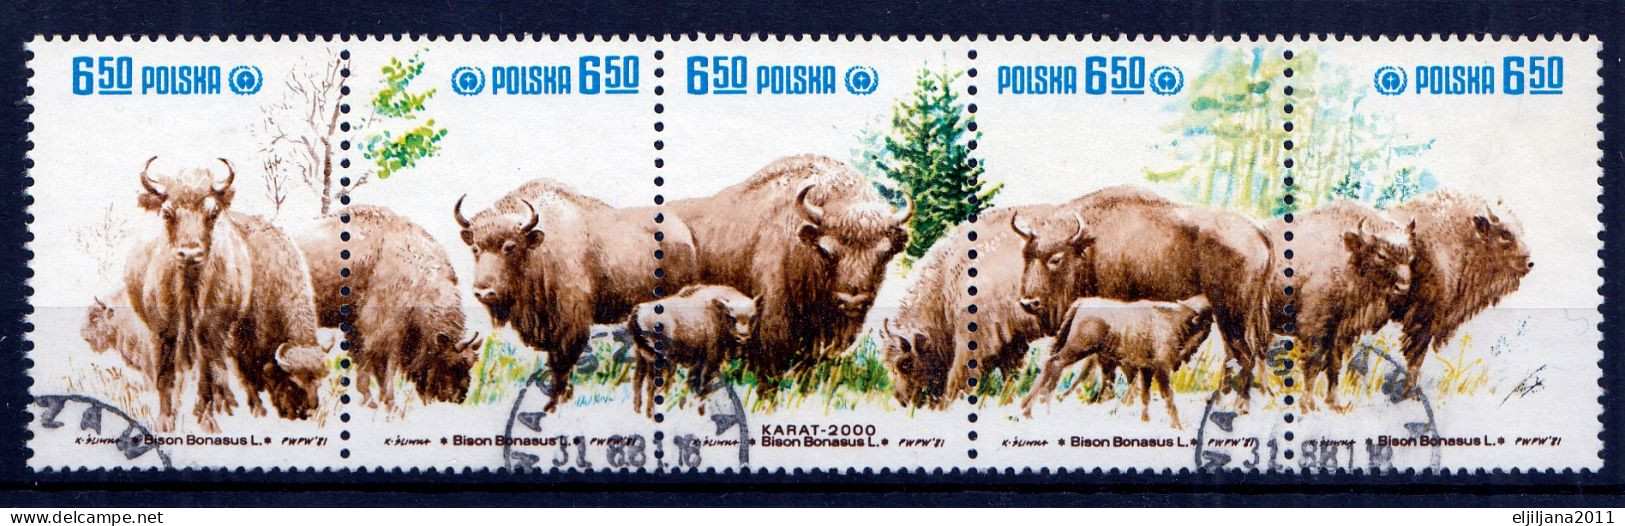 ⁕ Poland / Polska 1981 ⁕ Protection Nature European, Wild Bison Mi.2764-2768 ⁕ Used Strip Of 5 - Usati